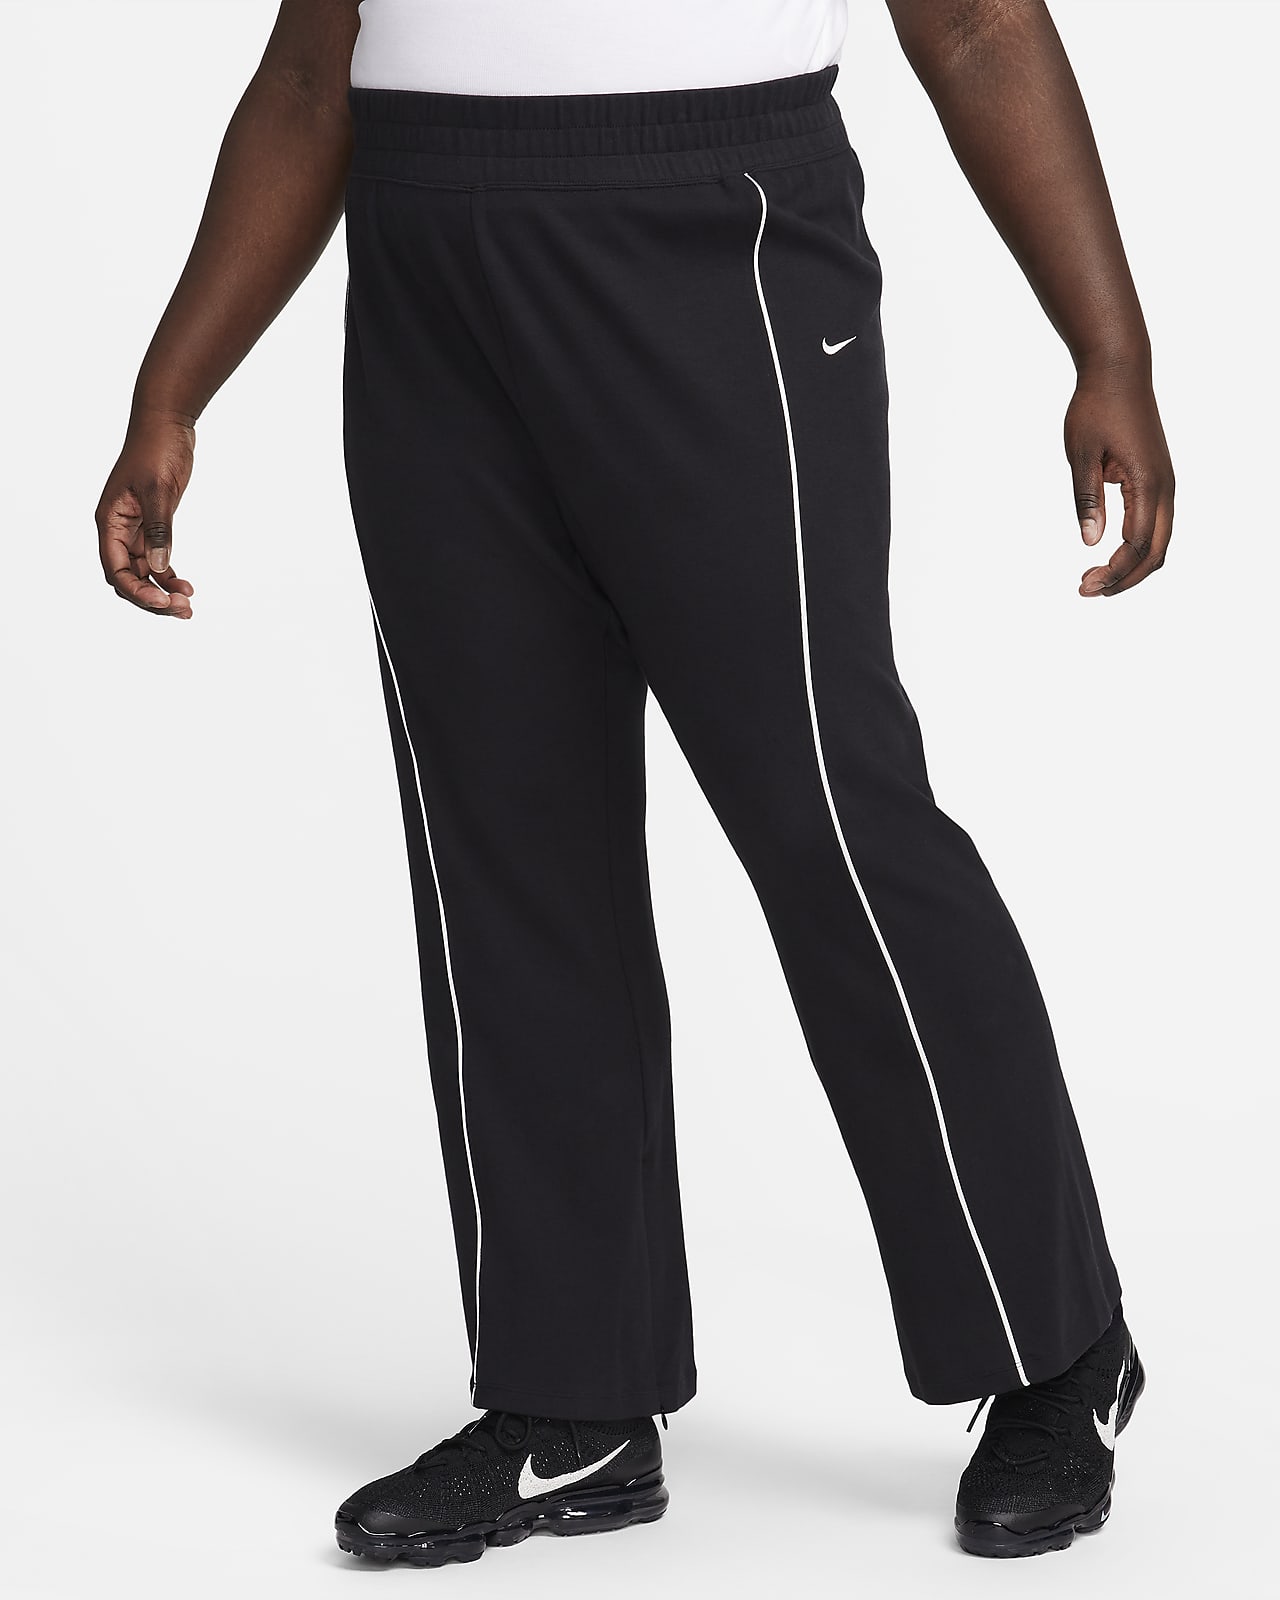 Pantalon à ourlet fendu Nike Sportswear Collection pour femme (grande taille)